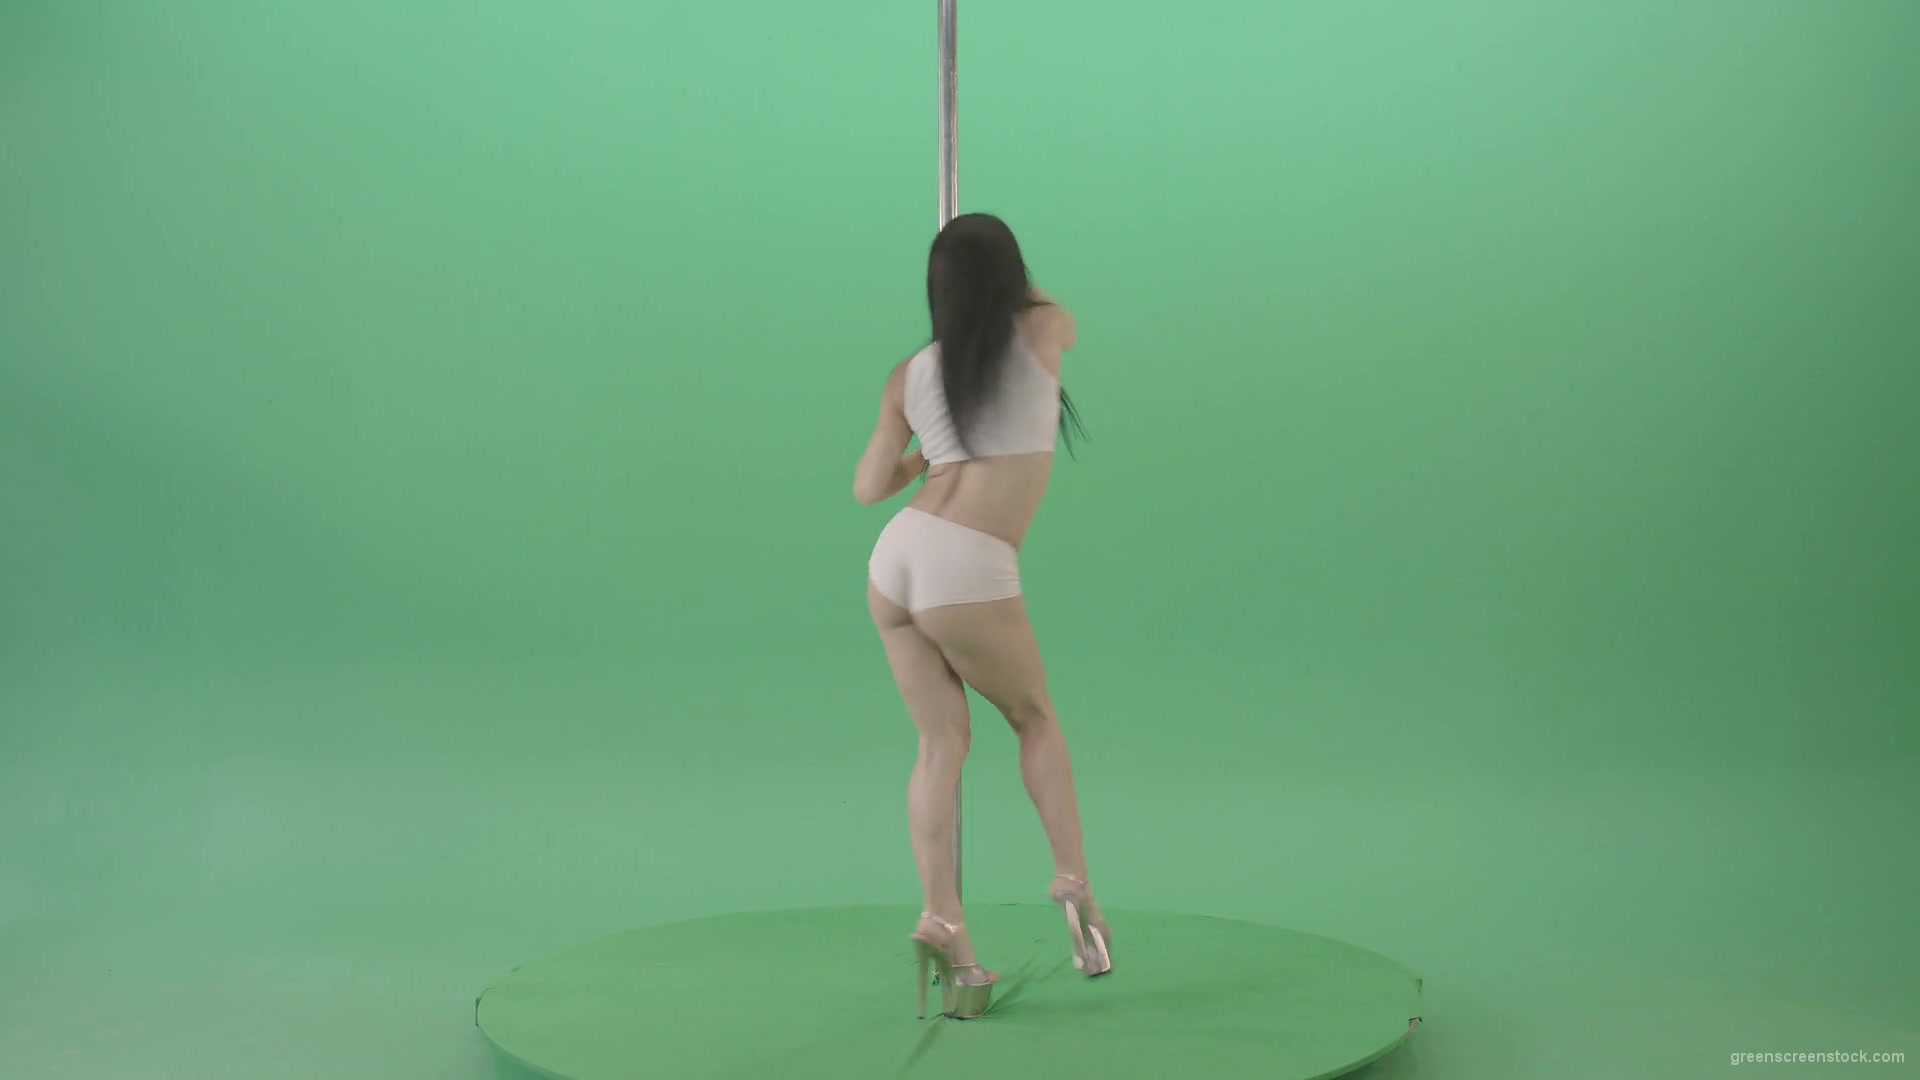 Dancing-GIrl-walking-arround-Pole-in-strip-white-underwear-on-green-screen-4K-Video-Footage-1920_004 Green Screen Stock